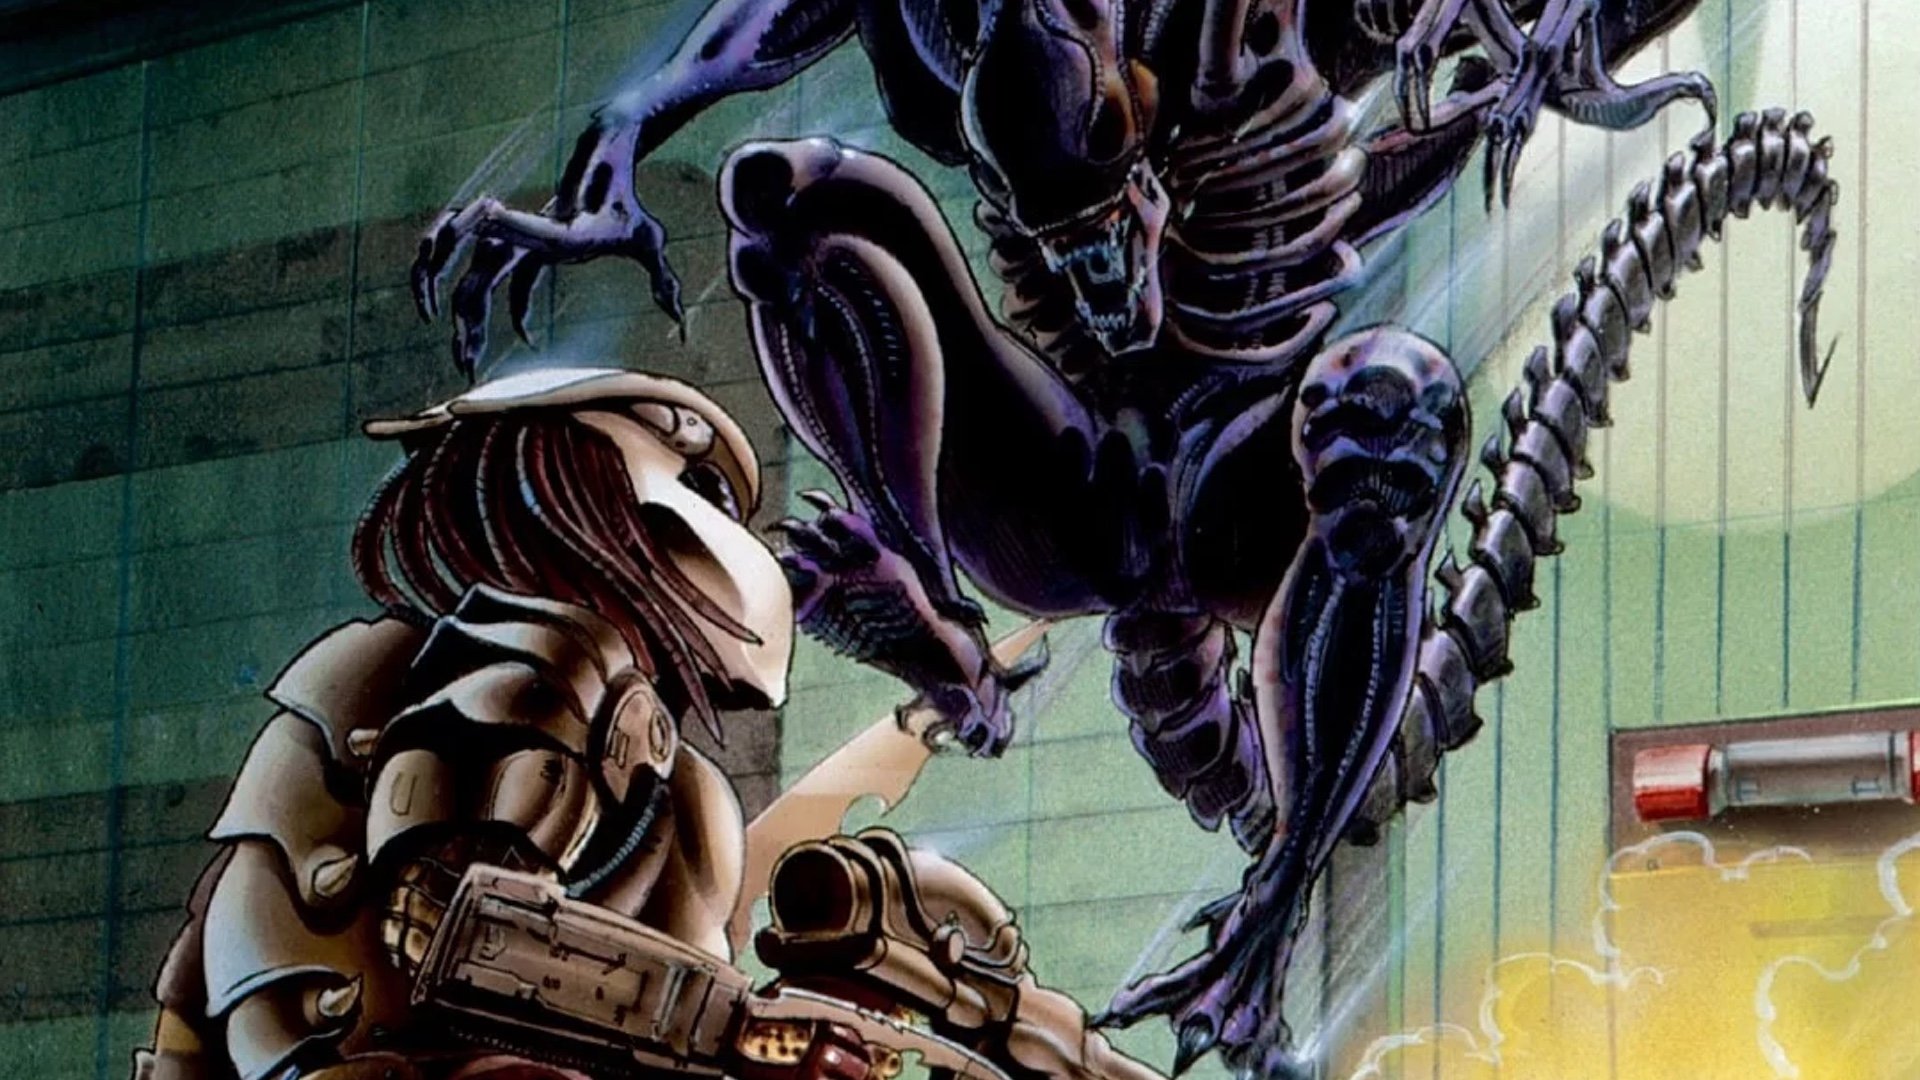 Exploring 'Alien': Why We Never Got The 'Alien vs. Predator' We